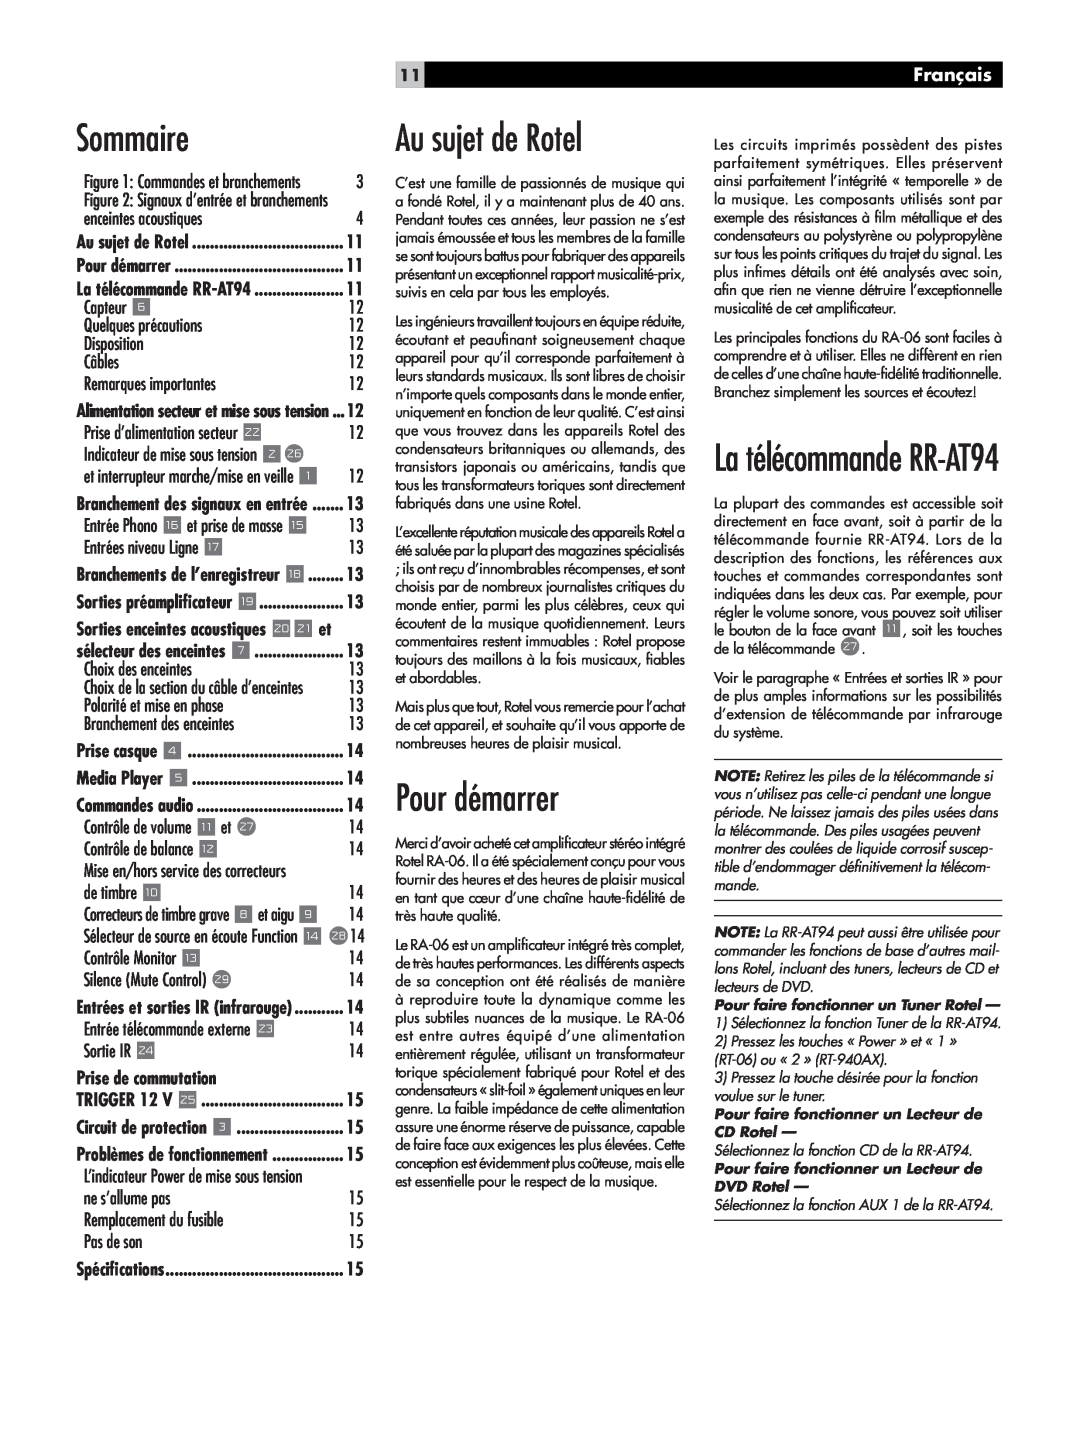 Rotel RA-06 owner manual Au sujet de Rotel, Pour démarrer, Sommaire, La télécommande RR-AT94, Français 